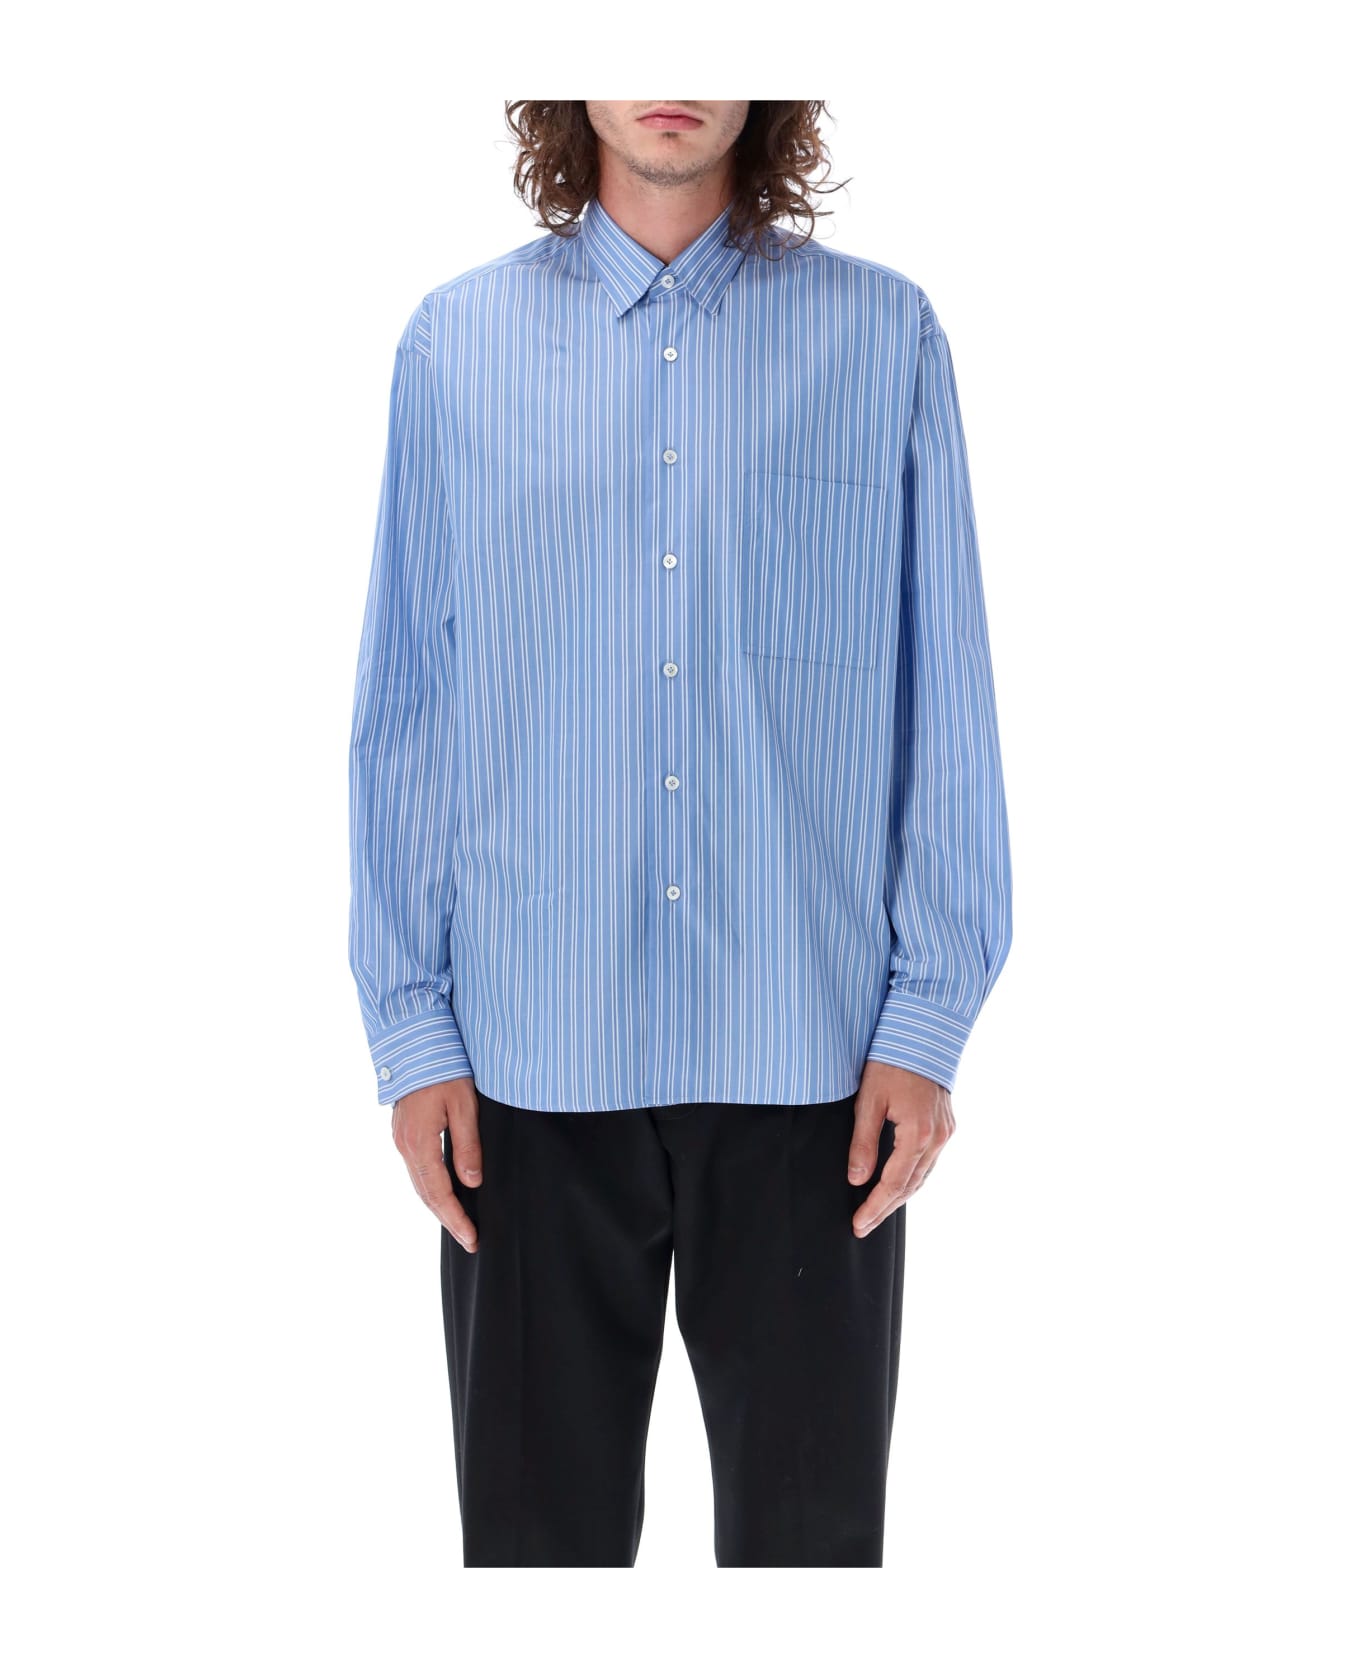 Lanvin Striped Shirt - BLUE/WHITE STRIPES